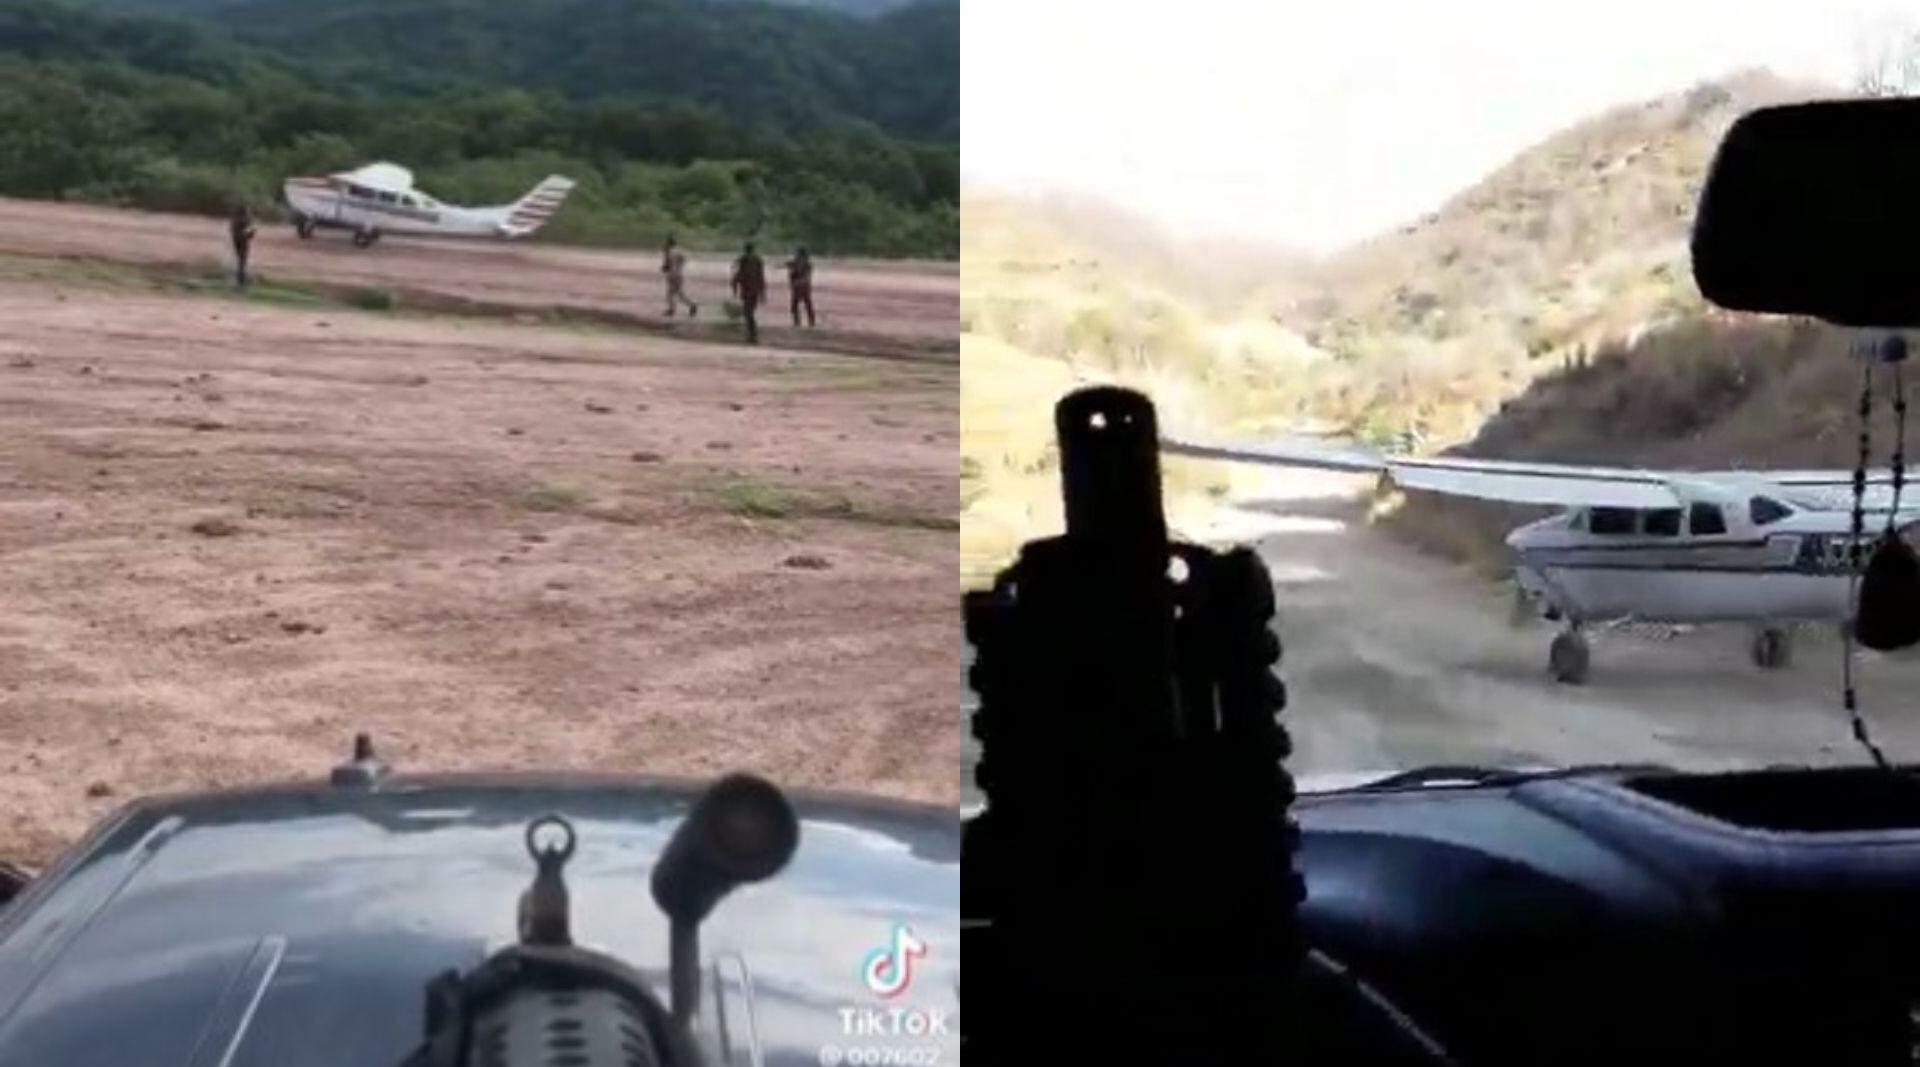 Presuntos integrantes del Cártel de Sinaloa captaron un par de sus avionetas en plena operación en Durango y compartieron los videos en internet. (Twitter / Google Maps)